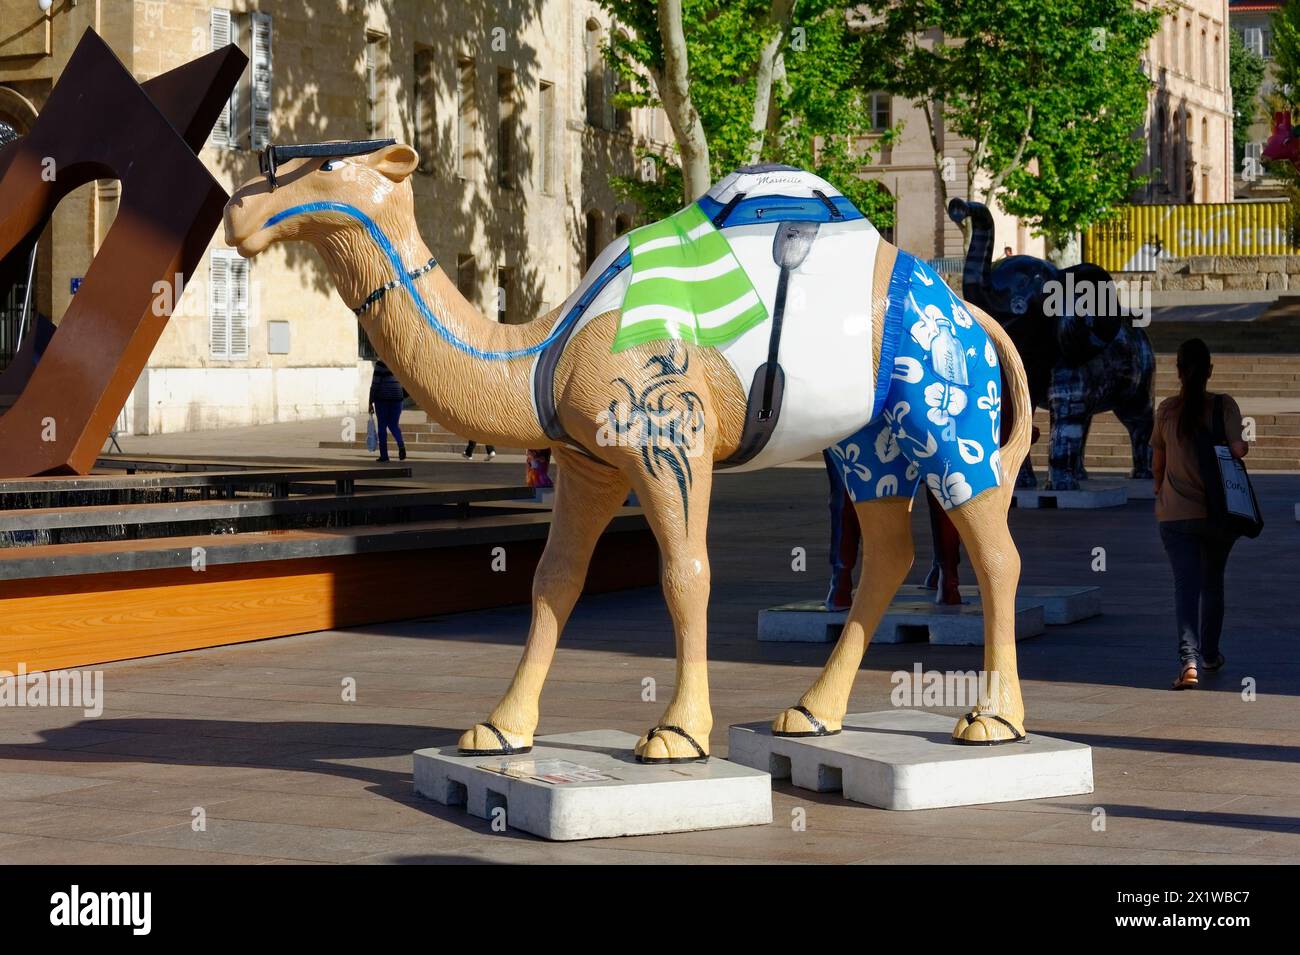 Scultura artistica di cammello al centro di una piazza pubblica, Marsiglia, dipartimento Bouches-du-Rhone, regione Provenza-Alpi-Costa Azzurra, Francia Foto Stock